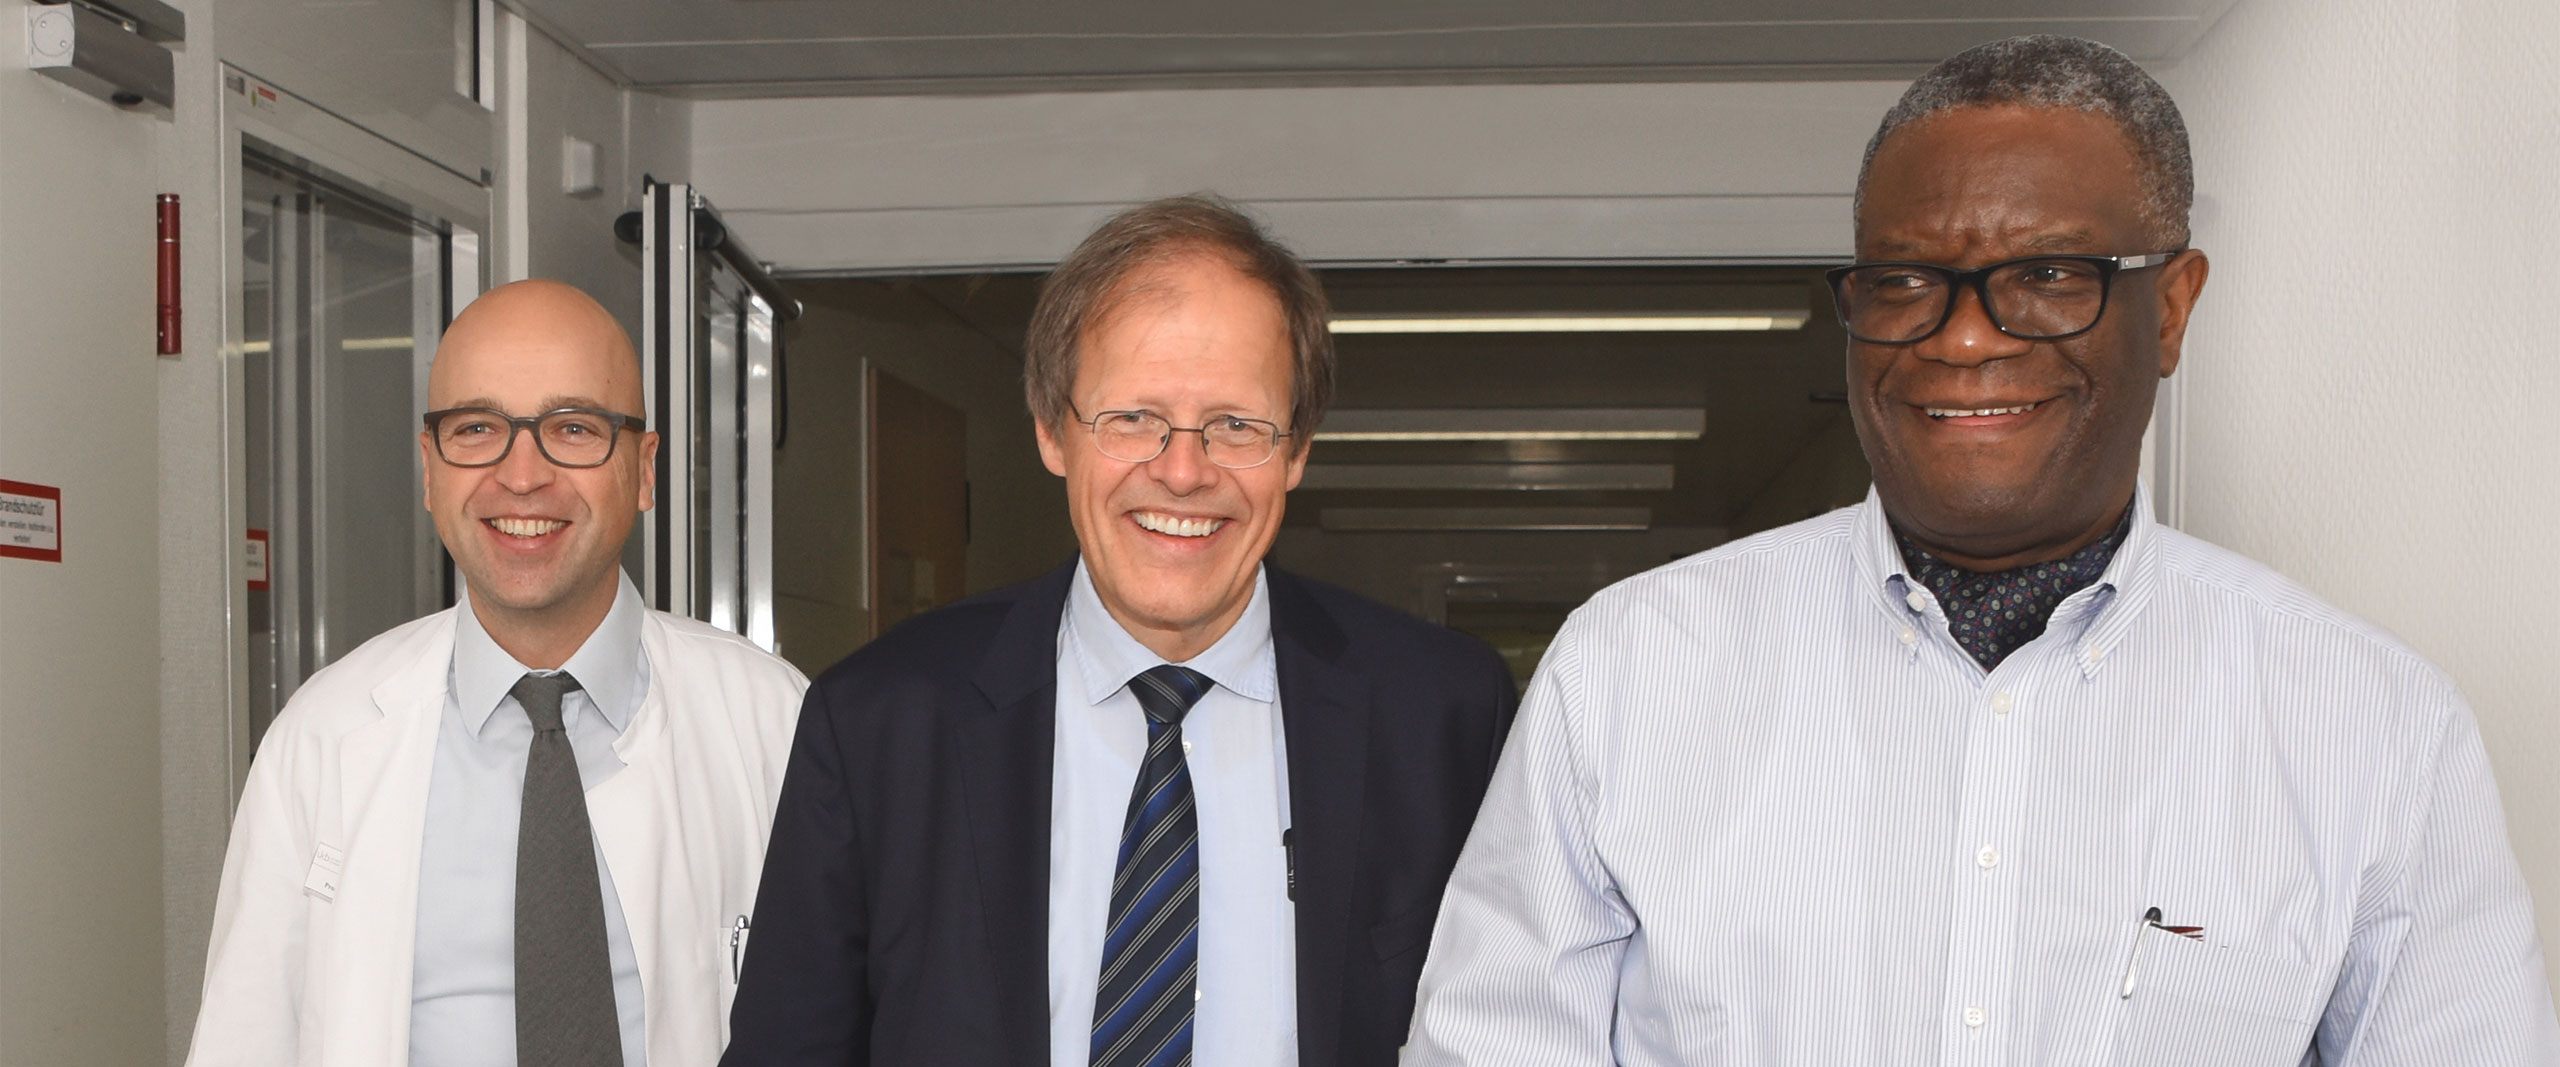 Prof. Alexander Mustea, Direktor der Gynäkologie am UKB, Prof. Wolfgang Holzgreve, Vorstandsvorsitzender des UKB, und Dr. Denis Mukwege, Friedensnobelpreisträger